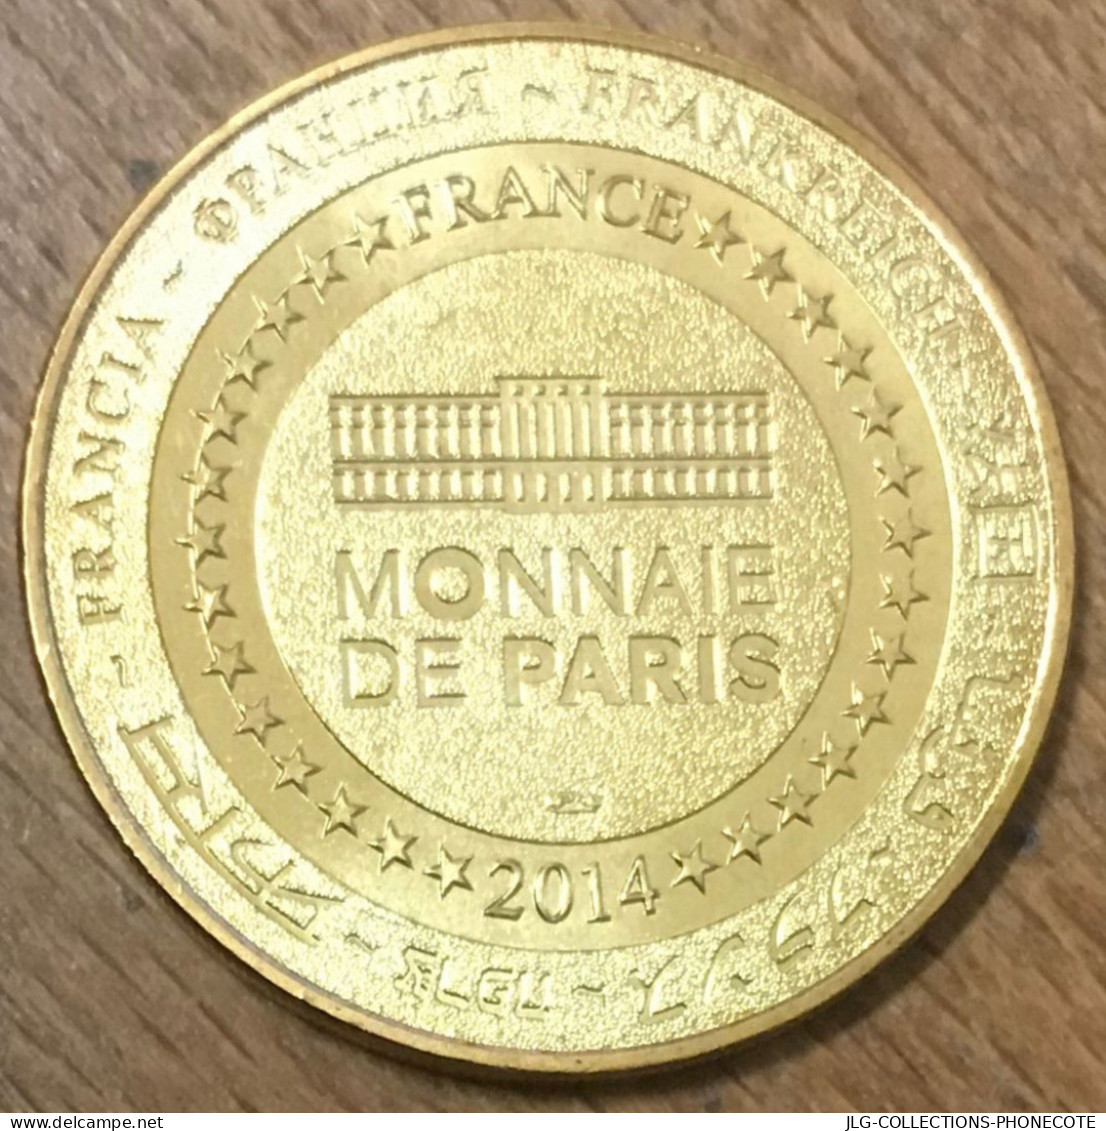 02 BLÉRENCOURT ANNE MORGAN MDP 2014 MÉDAILLE SOUVENIR MONNAIE DE PARIS JETON TOURISTIQUE TOKENS MEDALS COINS - 2014